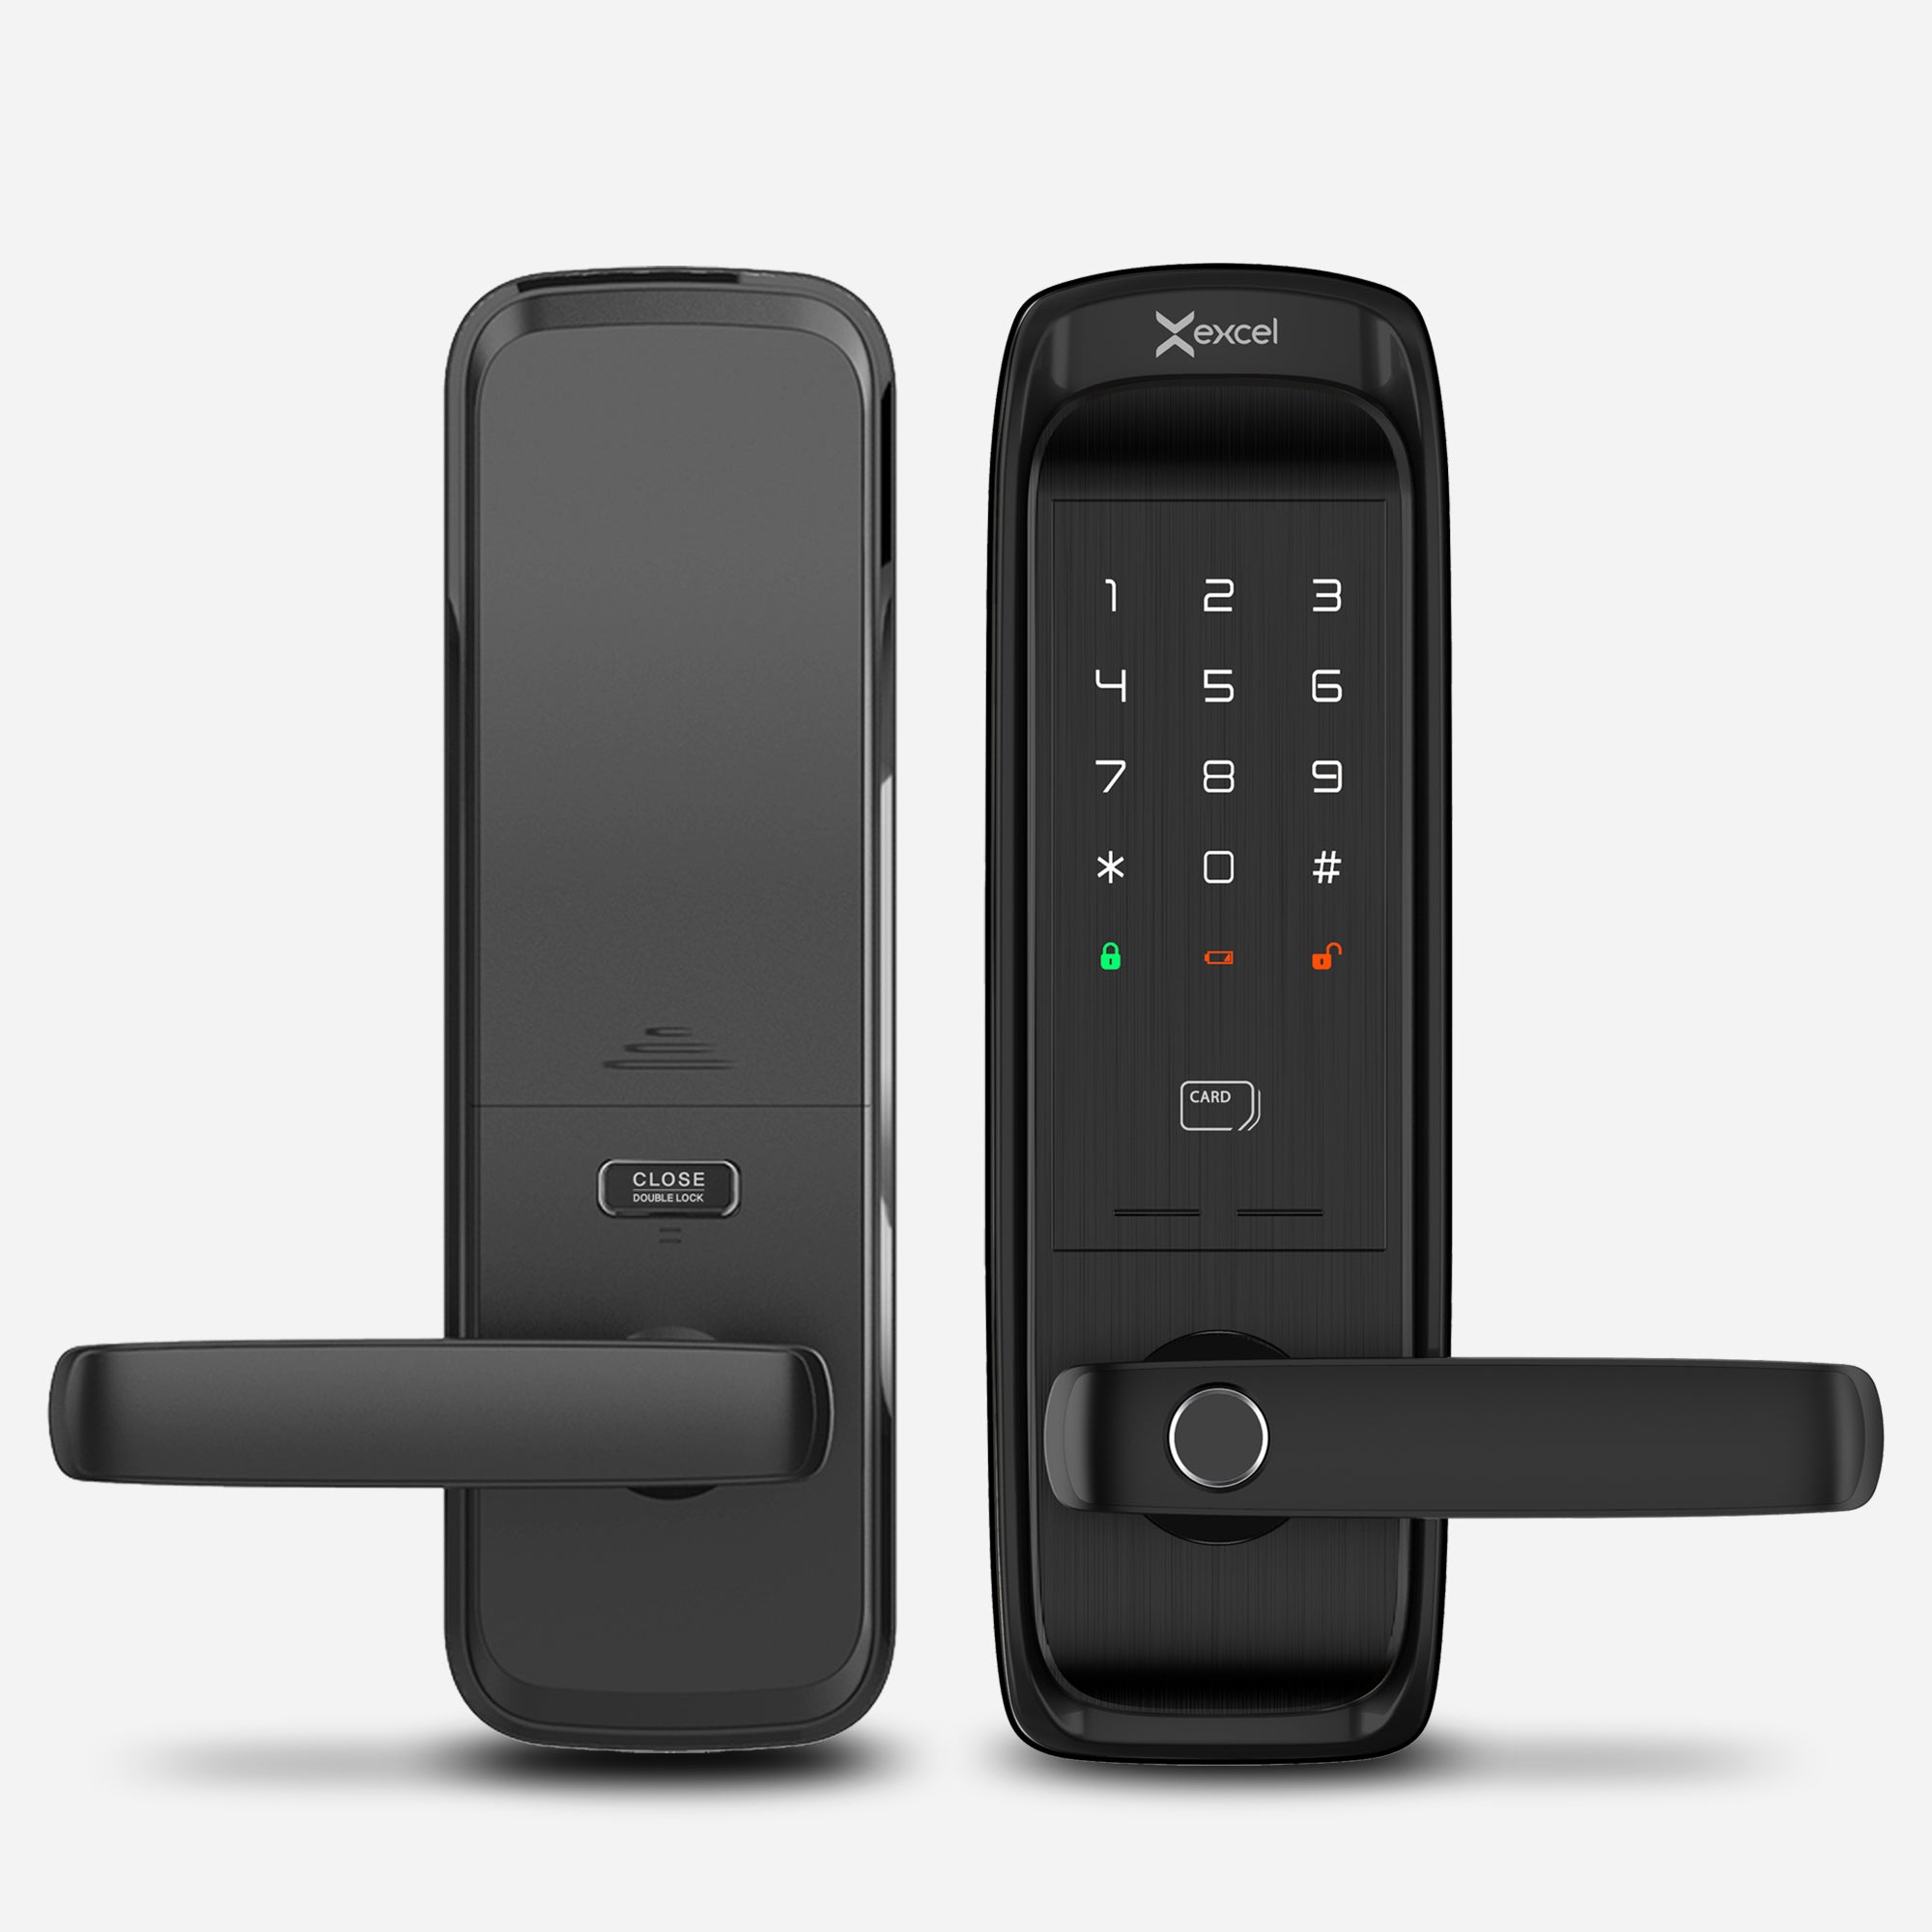 Cerradura Inteligente EXC-SL500. Conectividad WiFi y Bluetooth, lector de huella digital, Contraseña Numérica y Tarjeta RFID. Módulo interior, vista frontal.